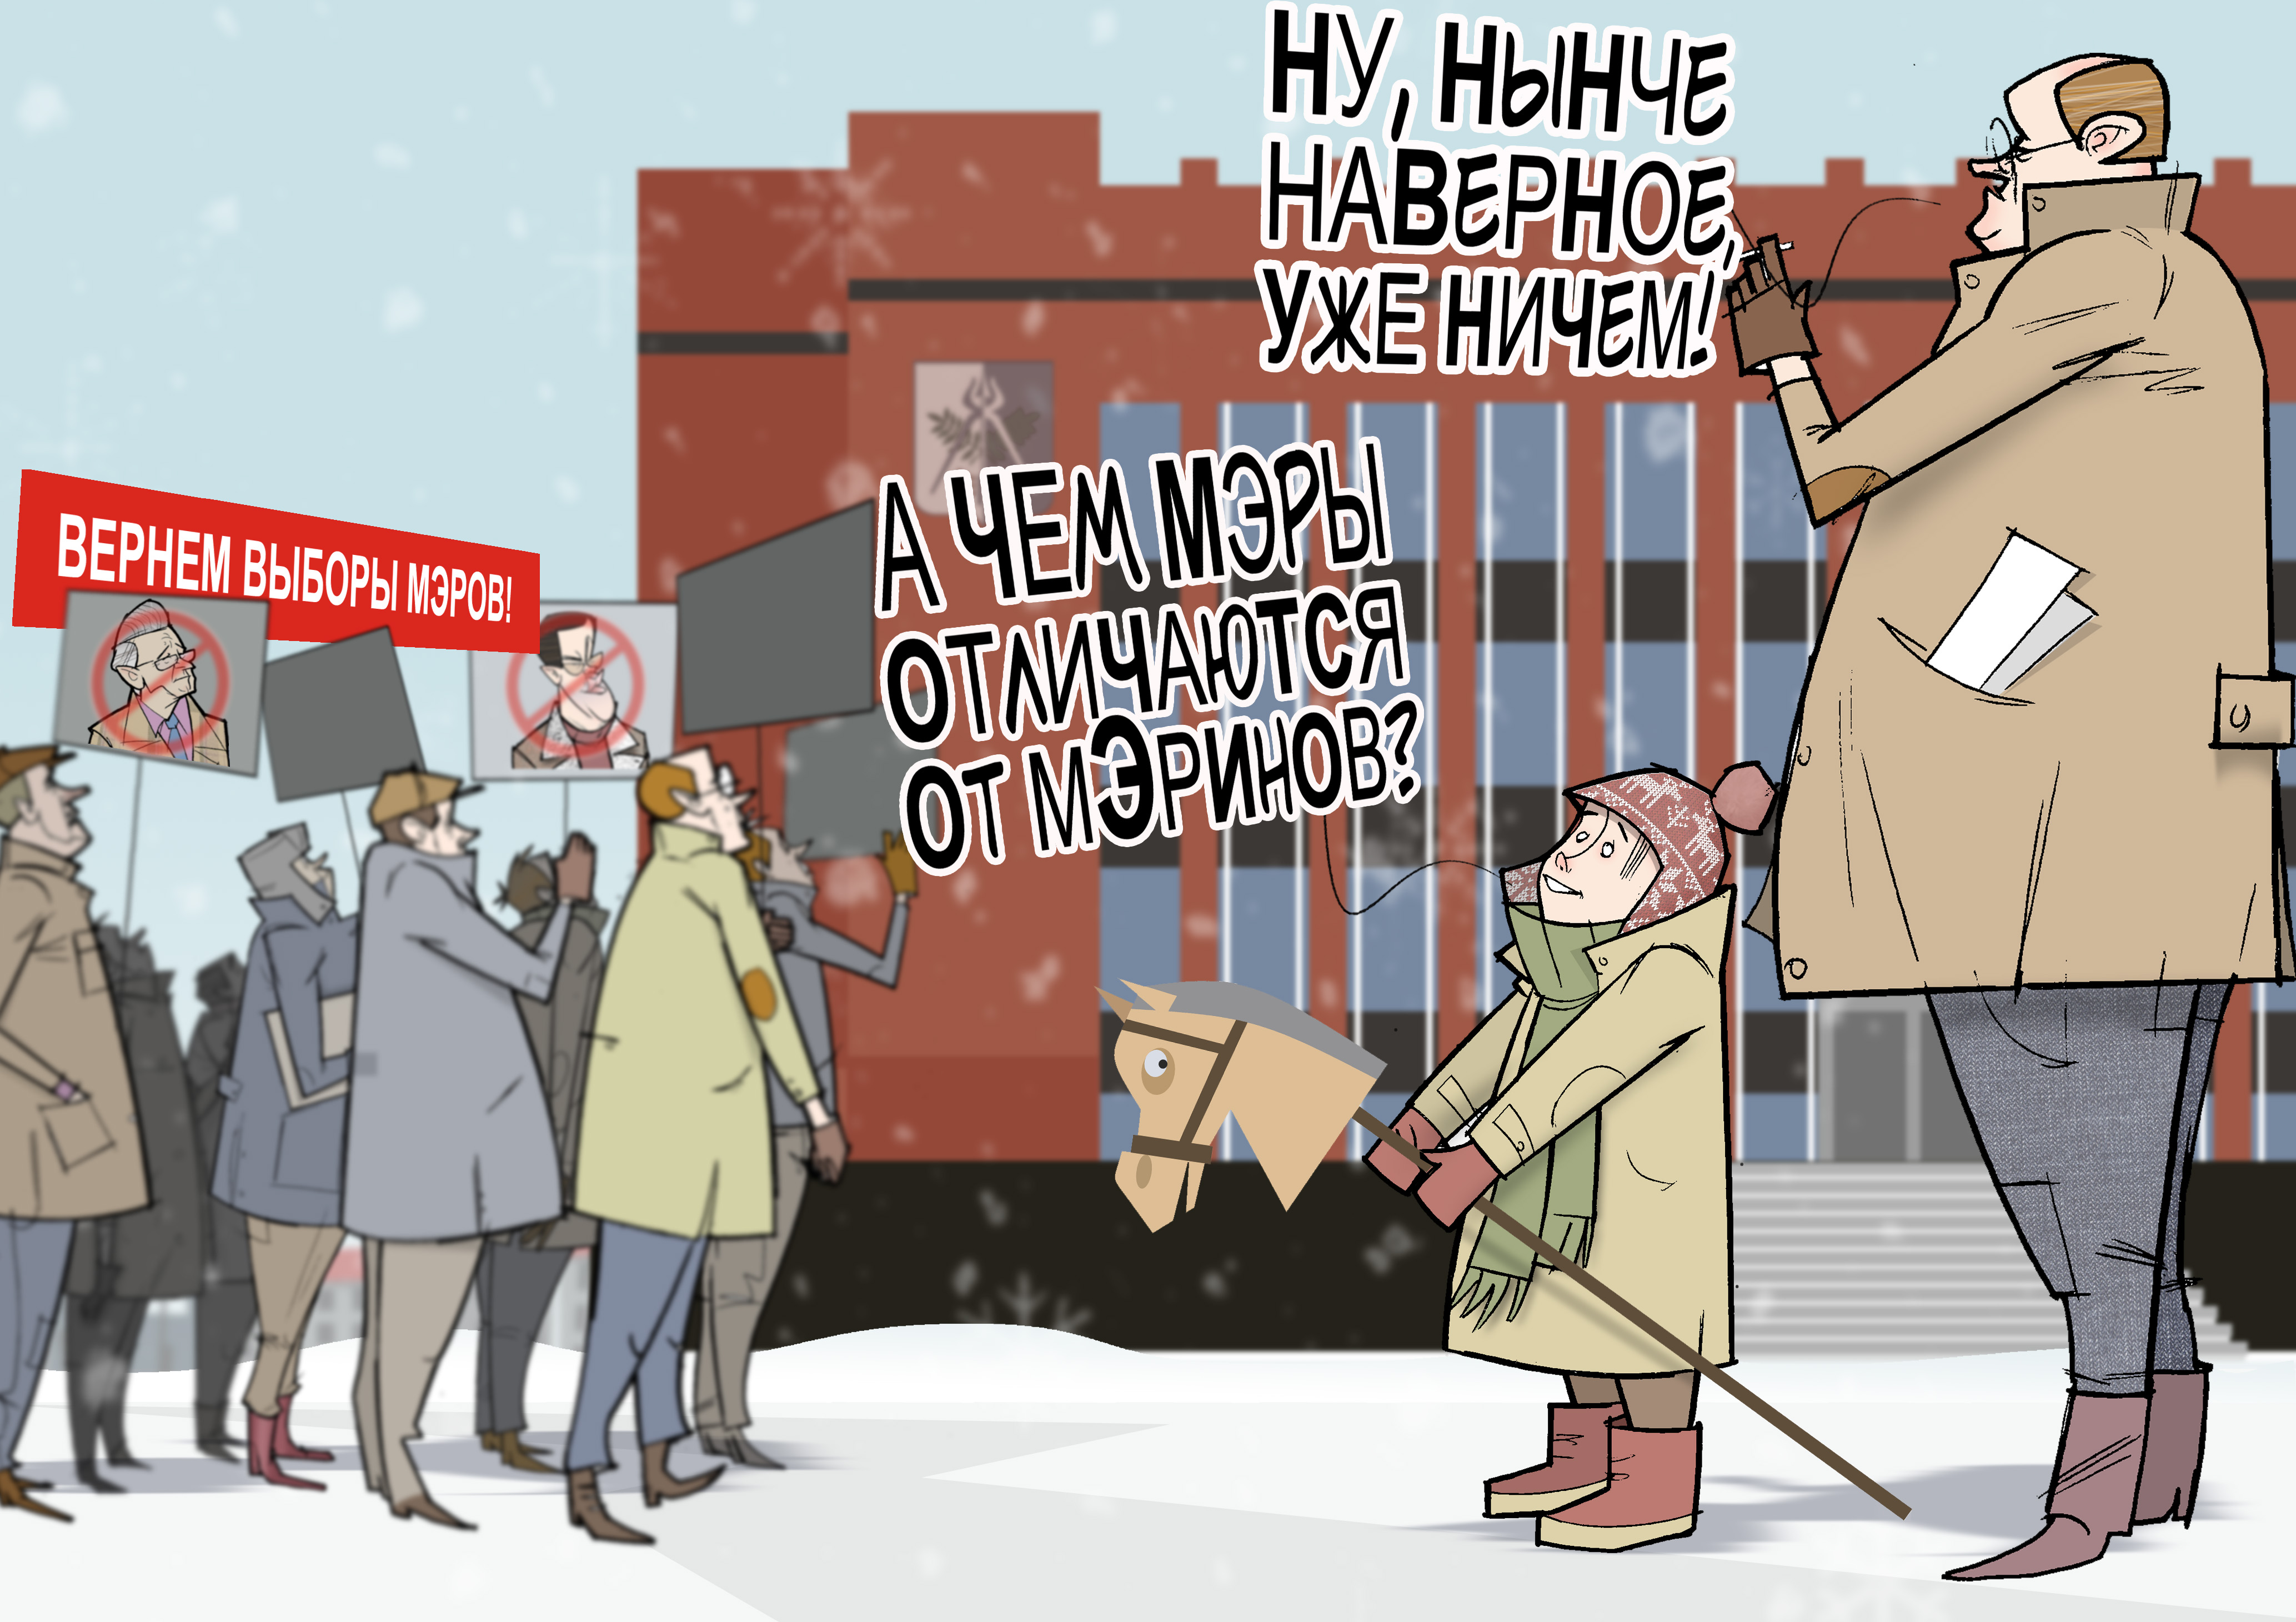 Чем мэры отличаются от мЭринов? #МестноеСамоуправление #Ижевск #Удмуртия © Газета "День" 2014